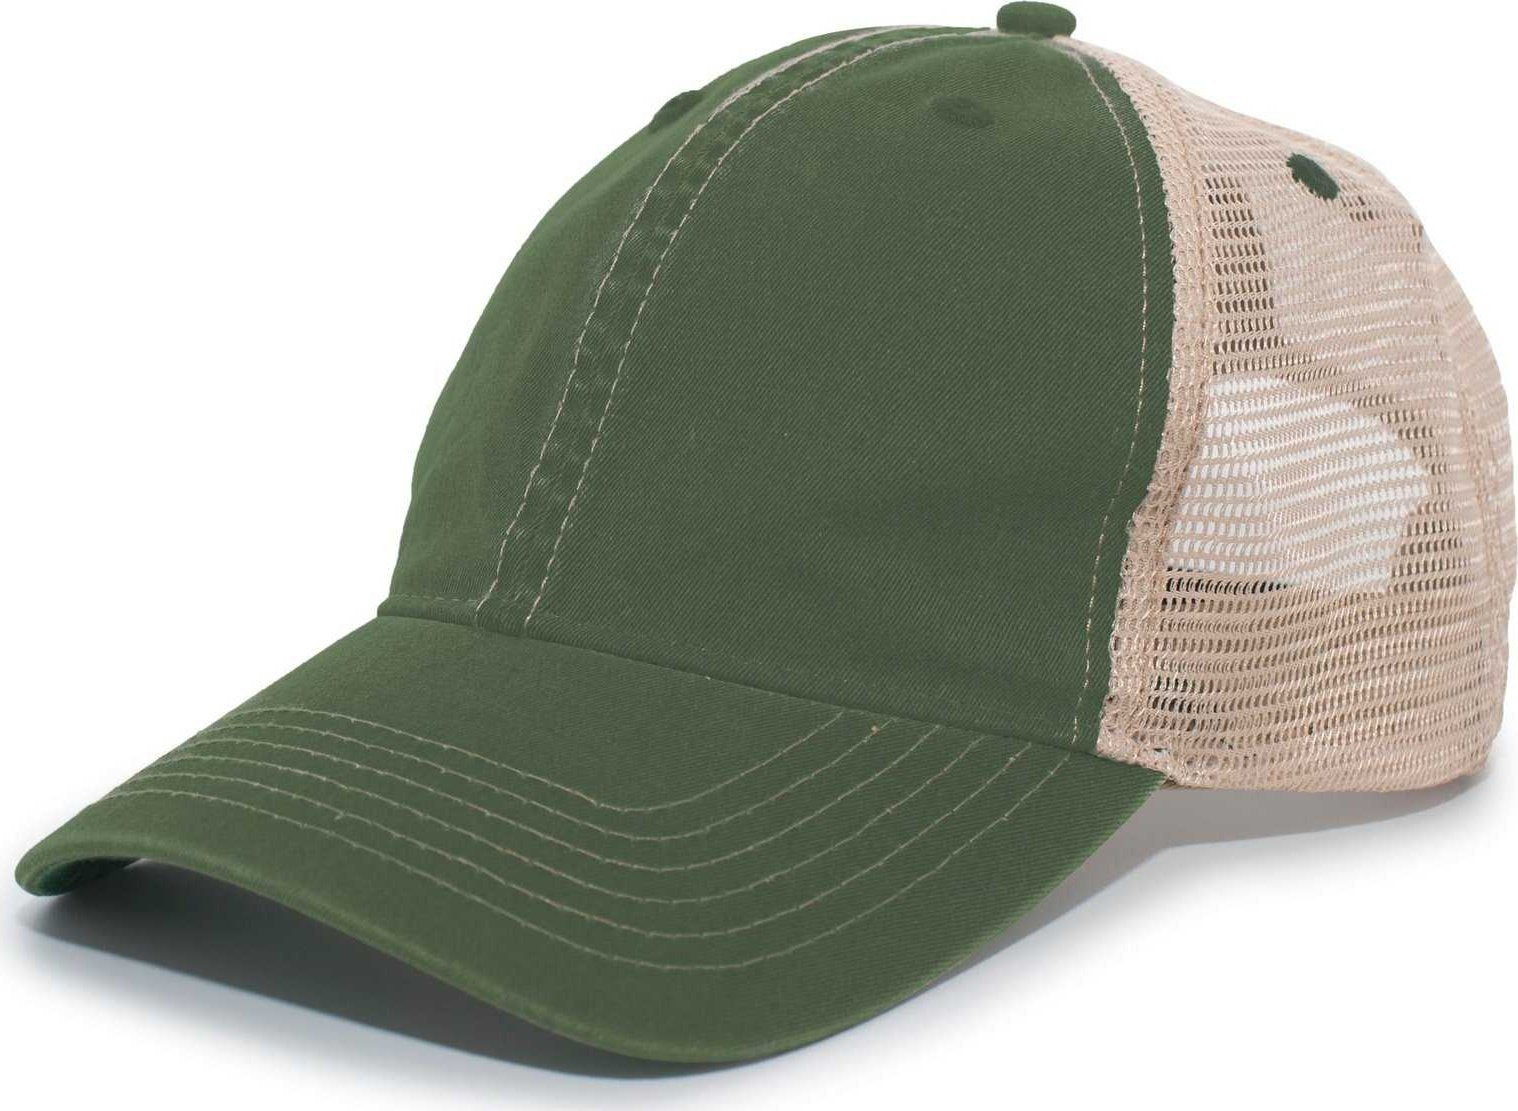 Pacific Headwear V37 Broken-In Trucker Mesh Snapback Cap - Dark Green Tan - HIT a Double